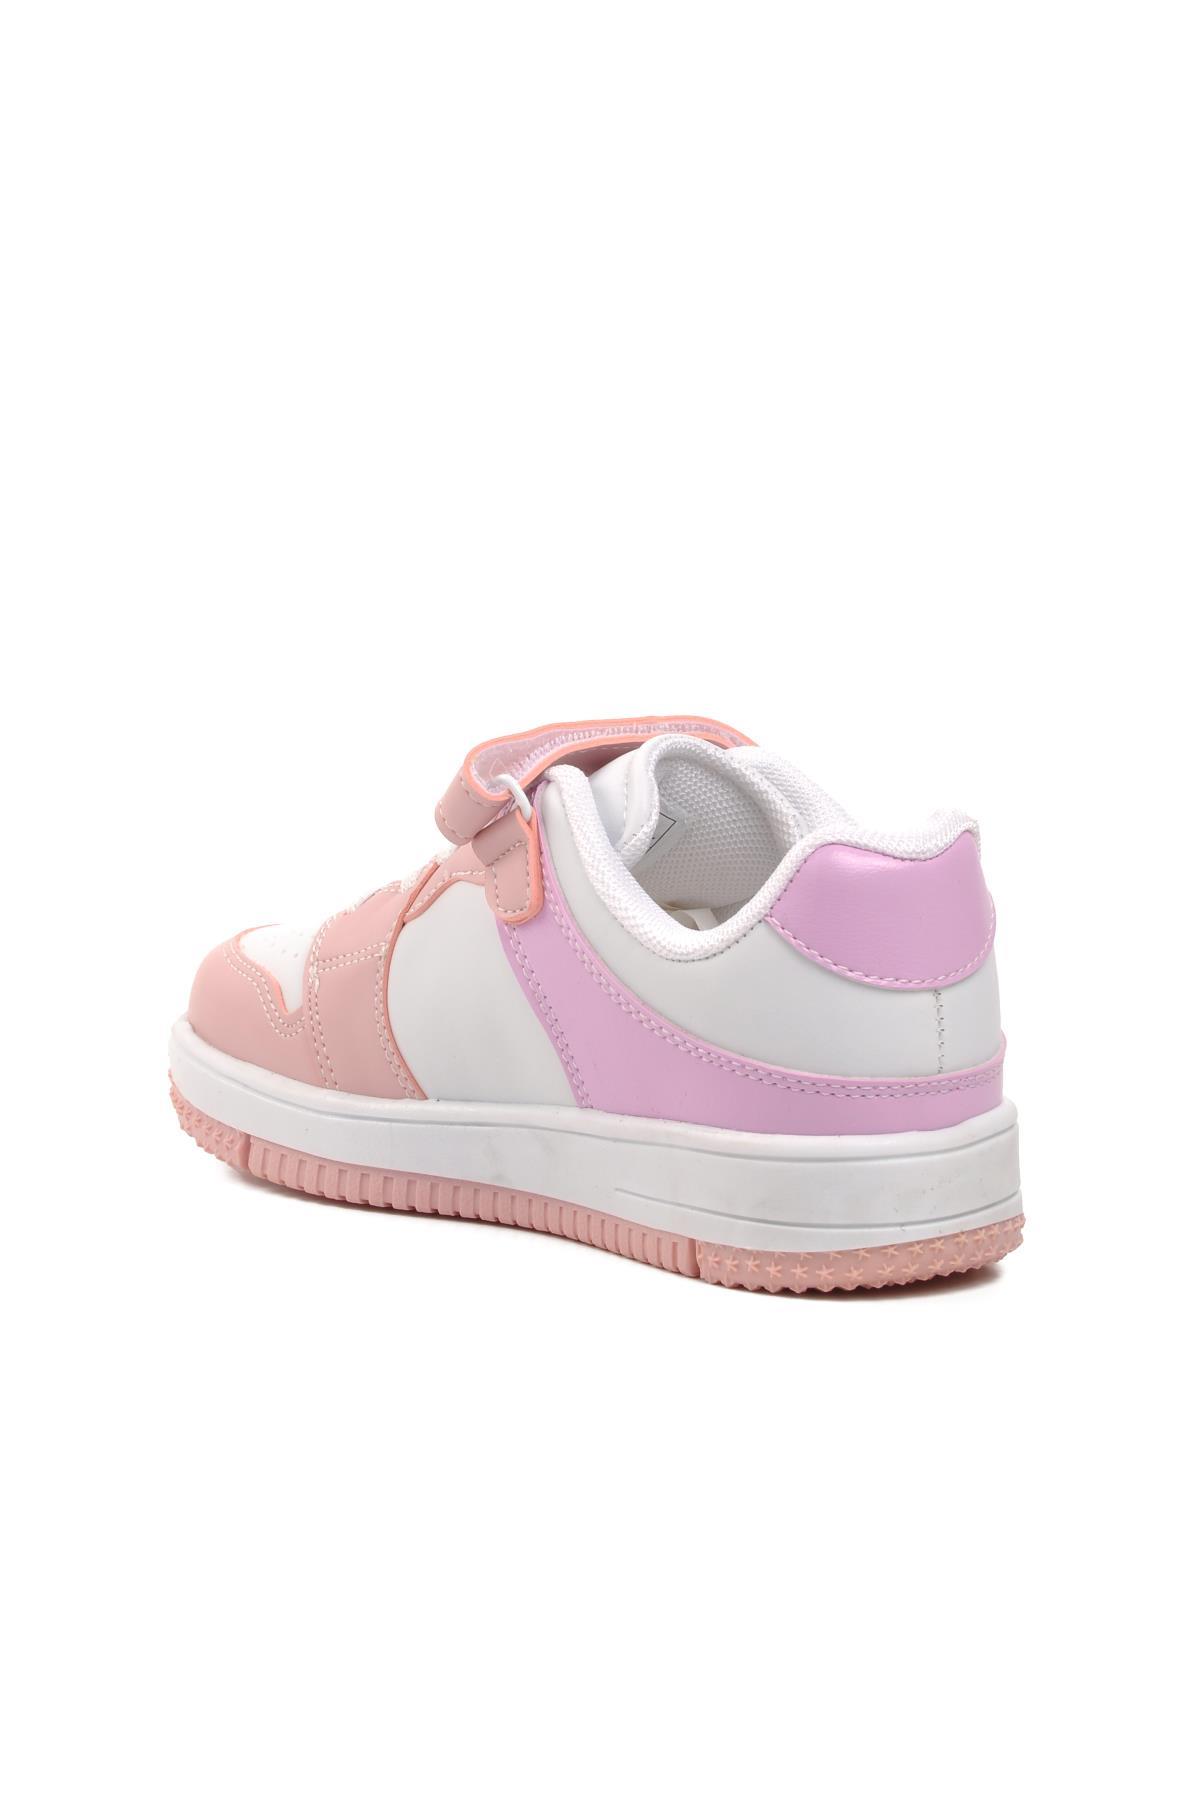 Aspor Haykat Kısa-P Lila-Pembe Cırtlı Çocuk Sneaker A SPOR Çocuk Spor Ayakkabı